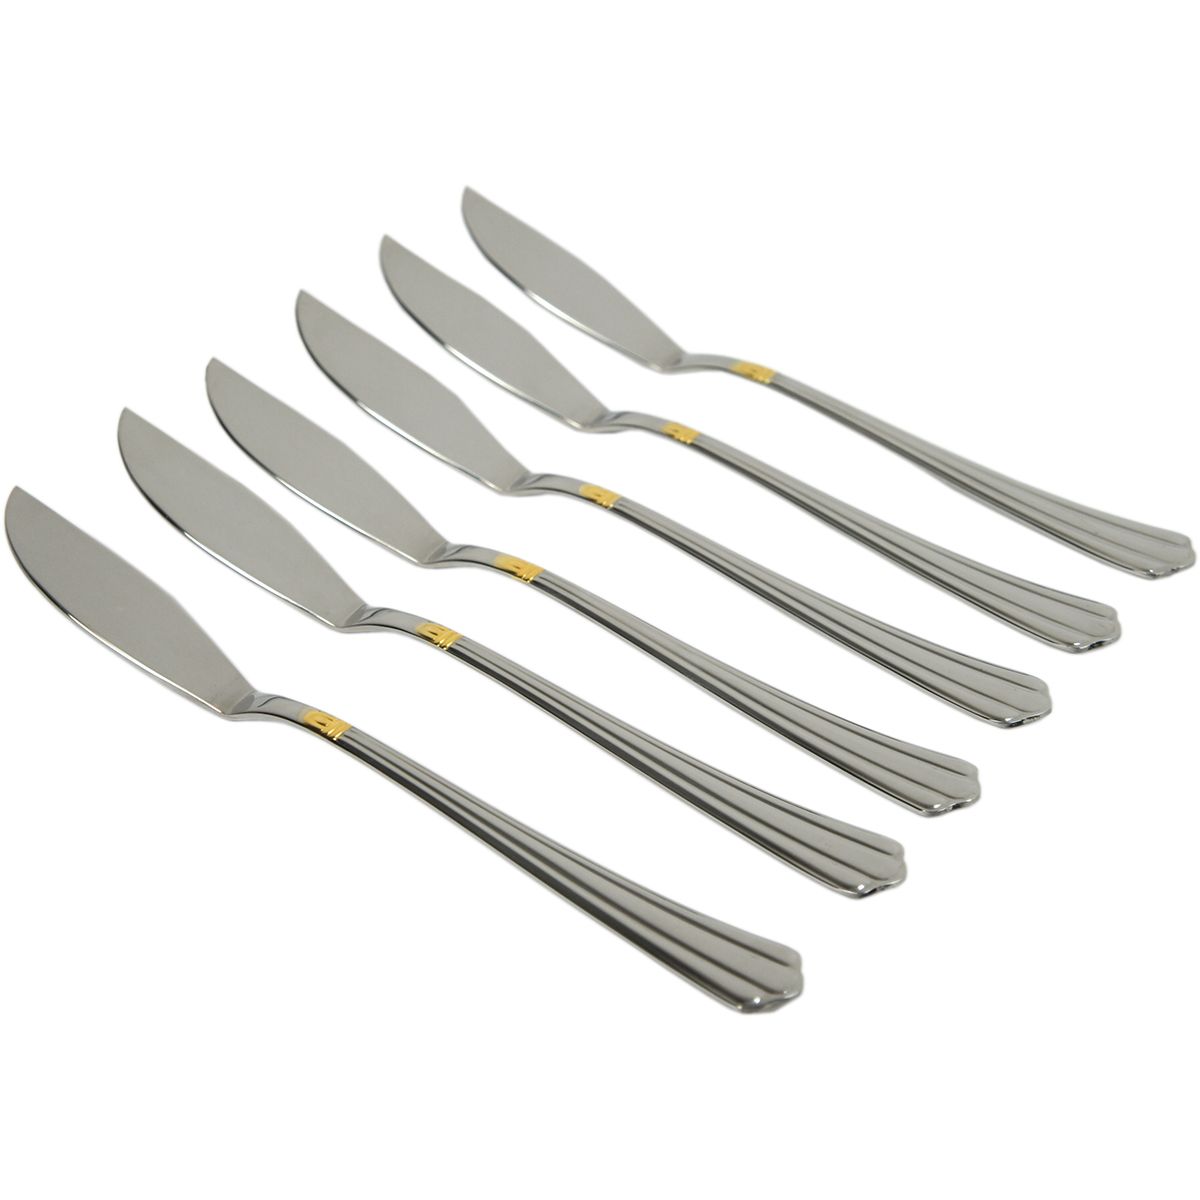 Набор ножей для рыбы Bernini Gold Pintinox 6 предметов нержавеющая сталь, Италия